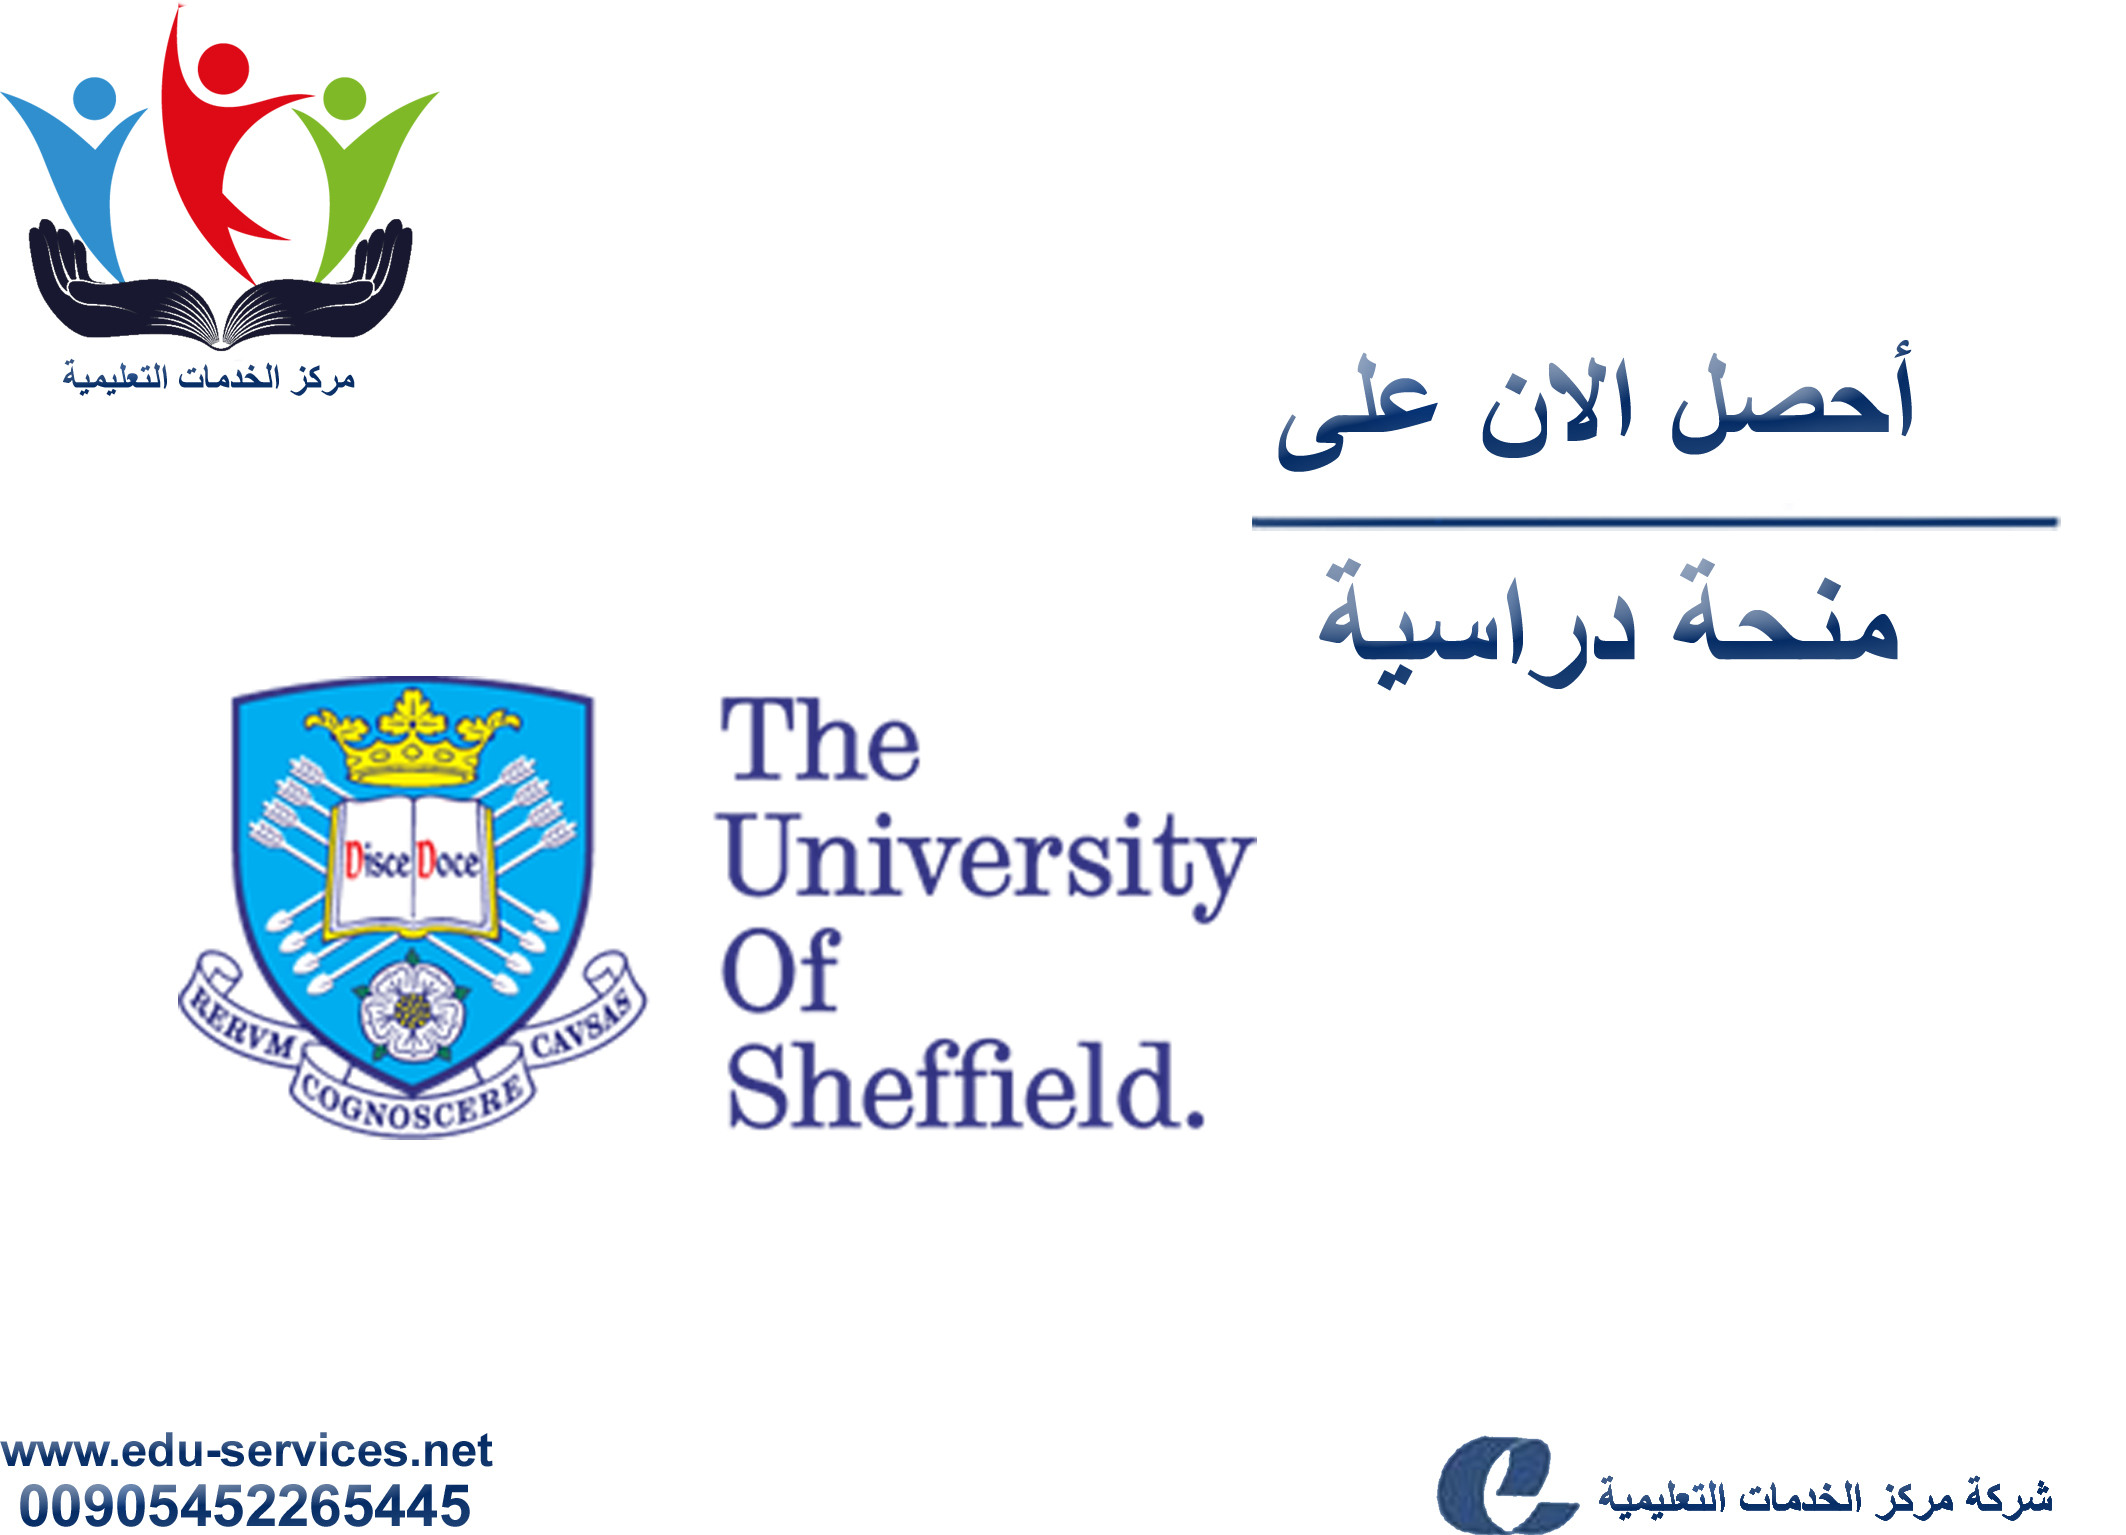 منح دراسية لدرجة البكالوريوس من Sheffield في بريطانيا للعام 2018-2019